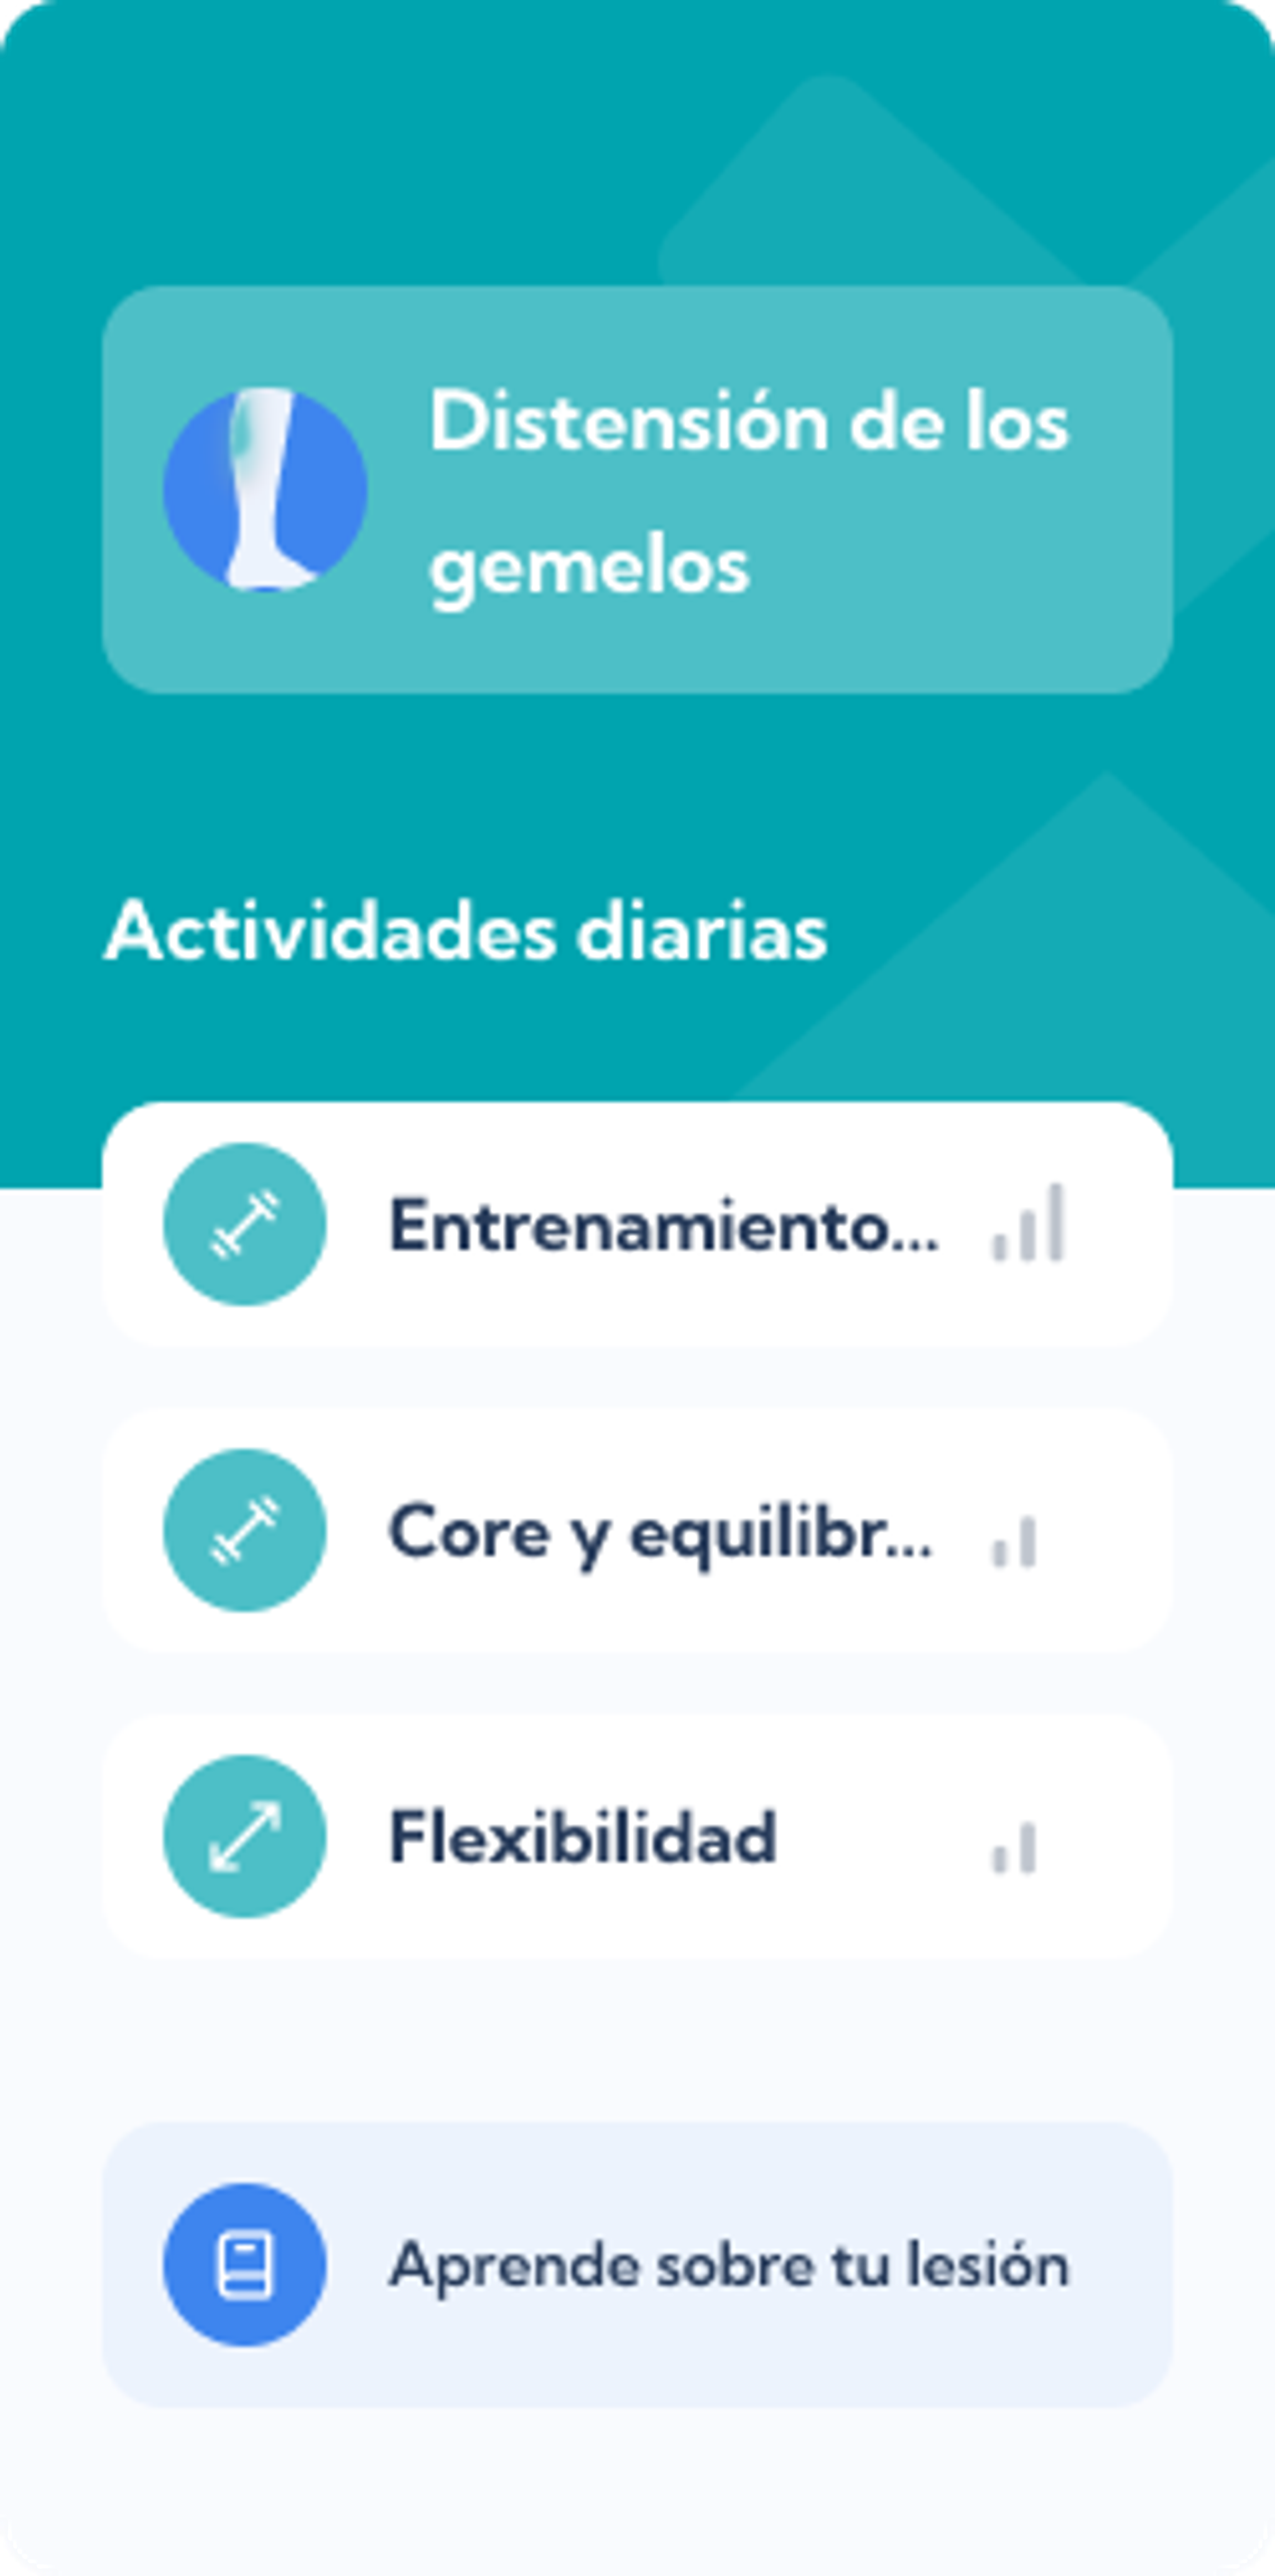 Plan de Distensión de los gemelos – Dashboard overview of the Exakt Health app